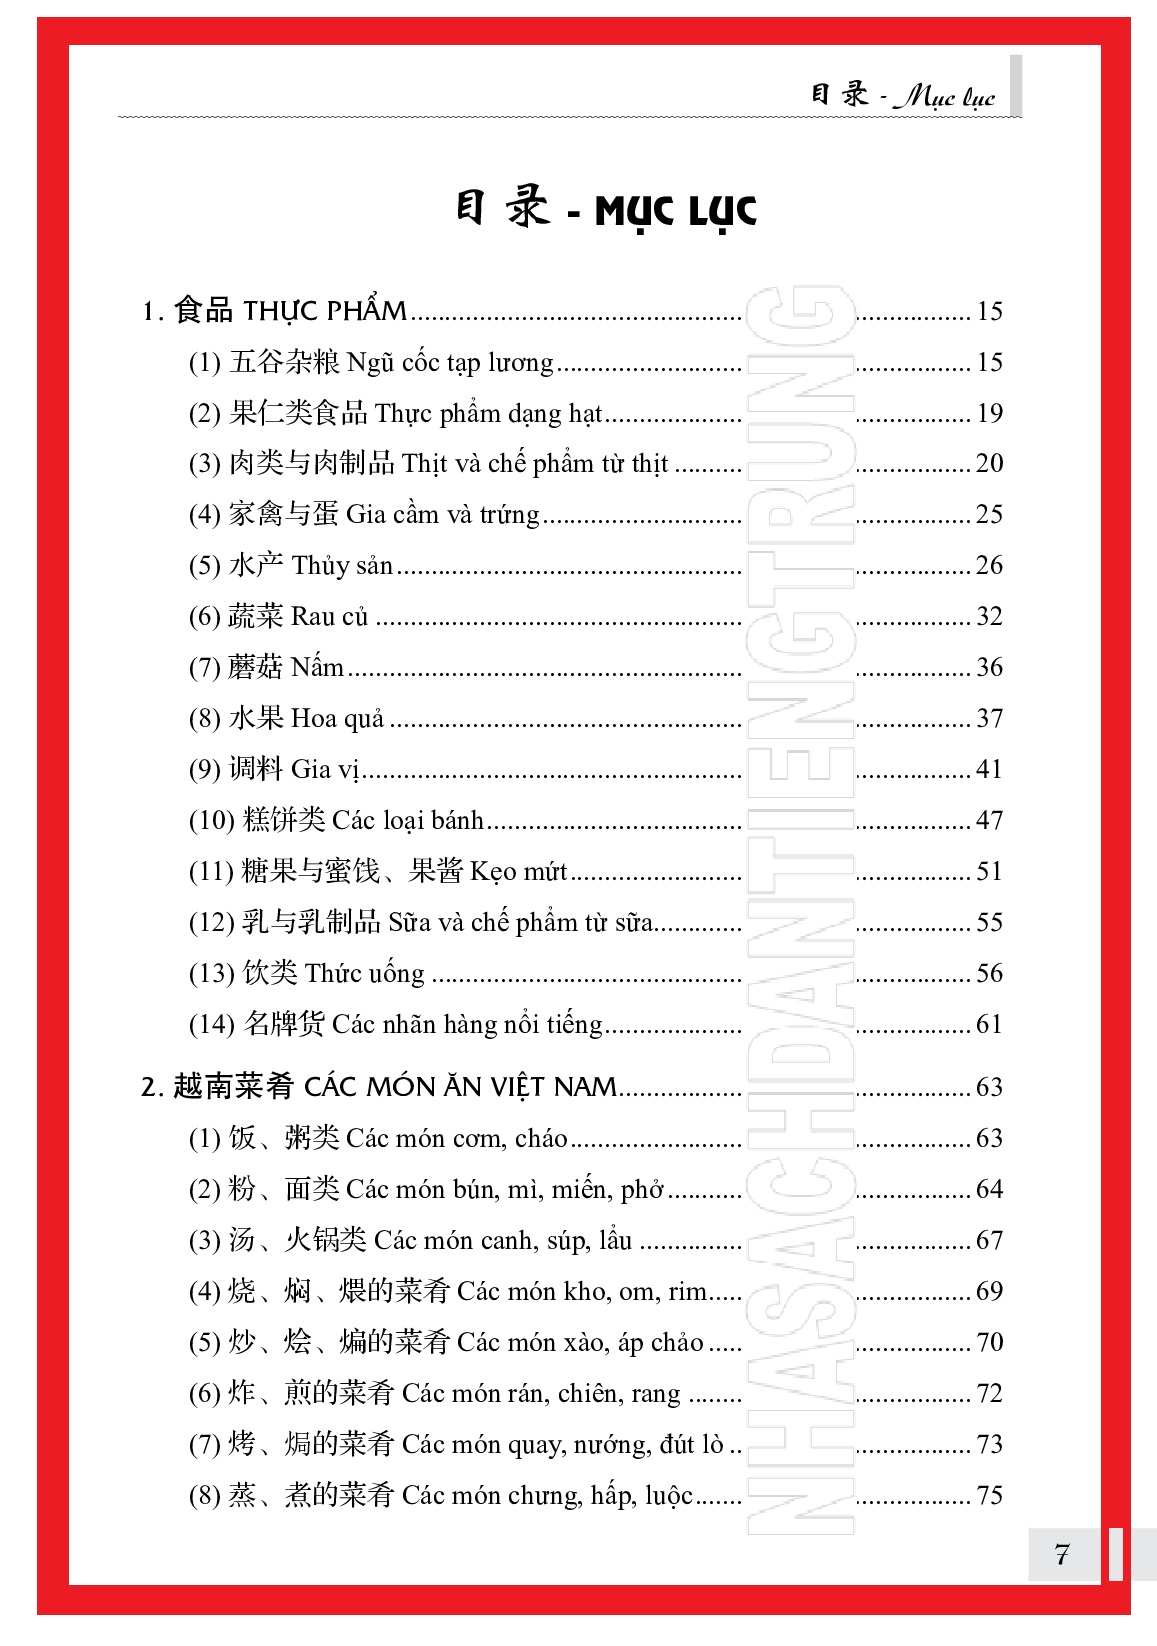 Combo 2 sách: 1500 Câu chém gió tiếng Trung thông dụng nhất + Từ điển chủ điểm Hán Việt chuyên nghành  + DVD